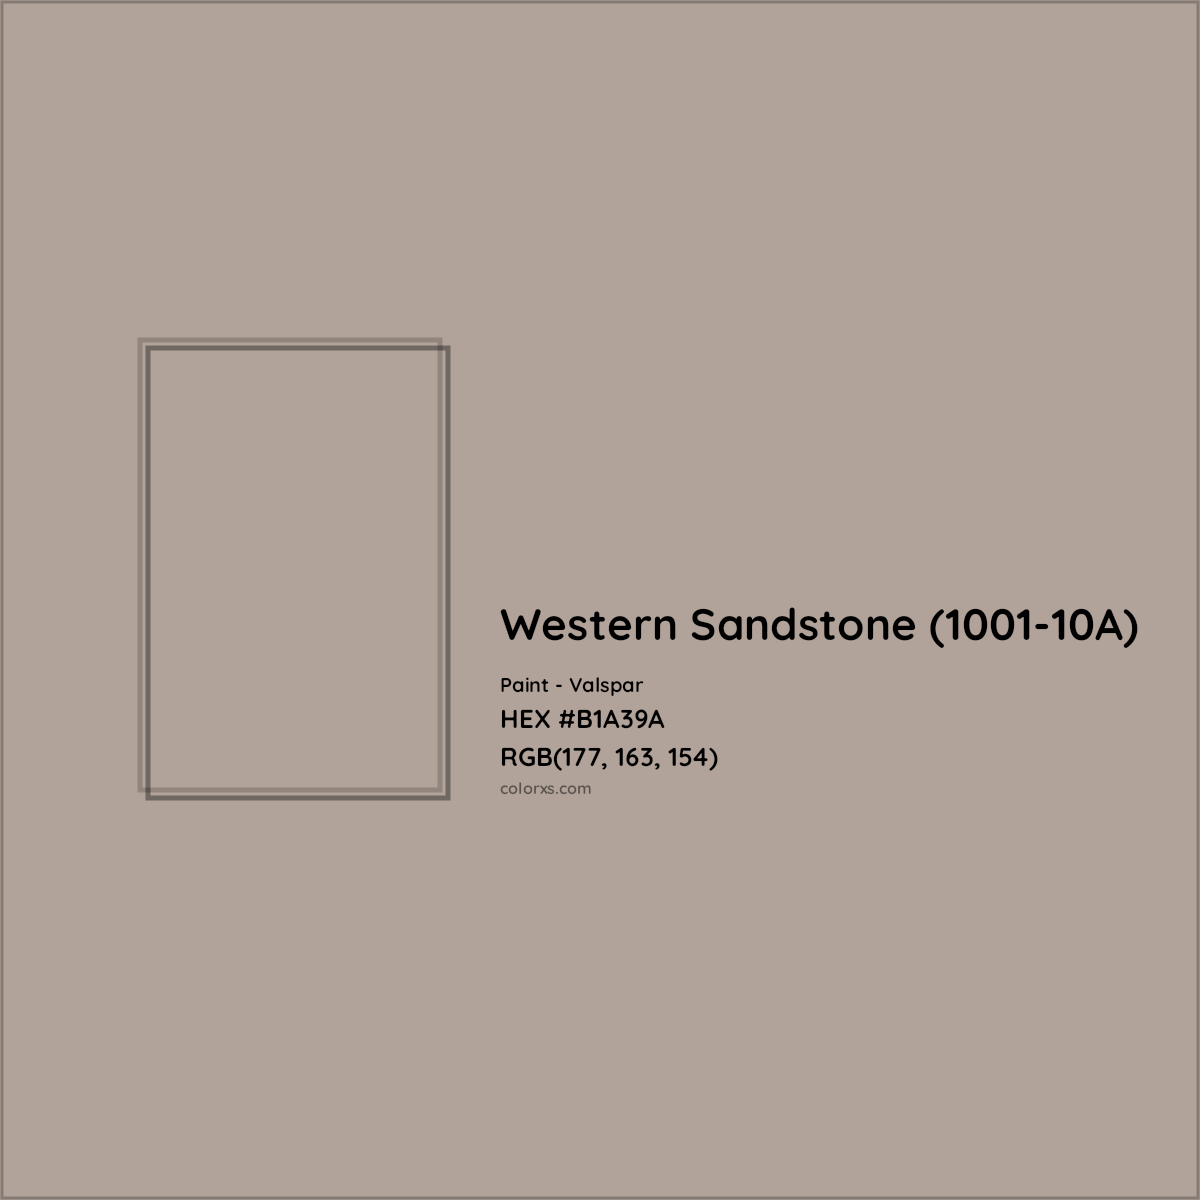 HEX #B1A39A Western Sandstone (1001-10A) Paint Valspar - Color Code